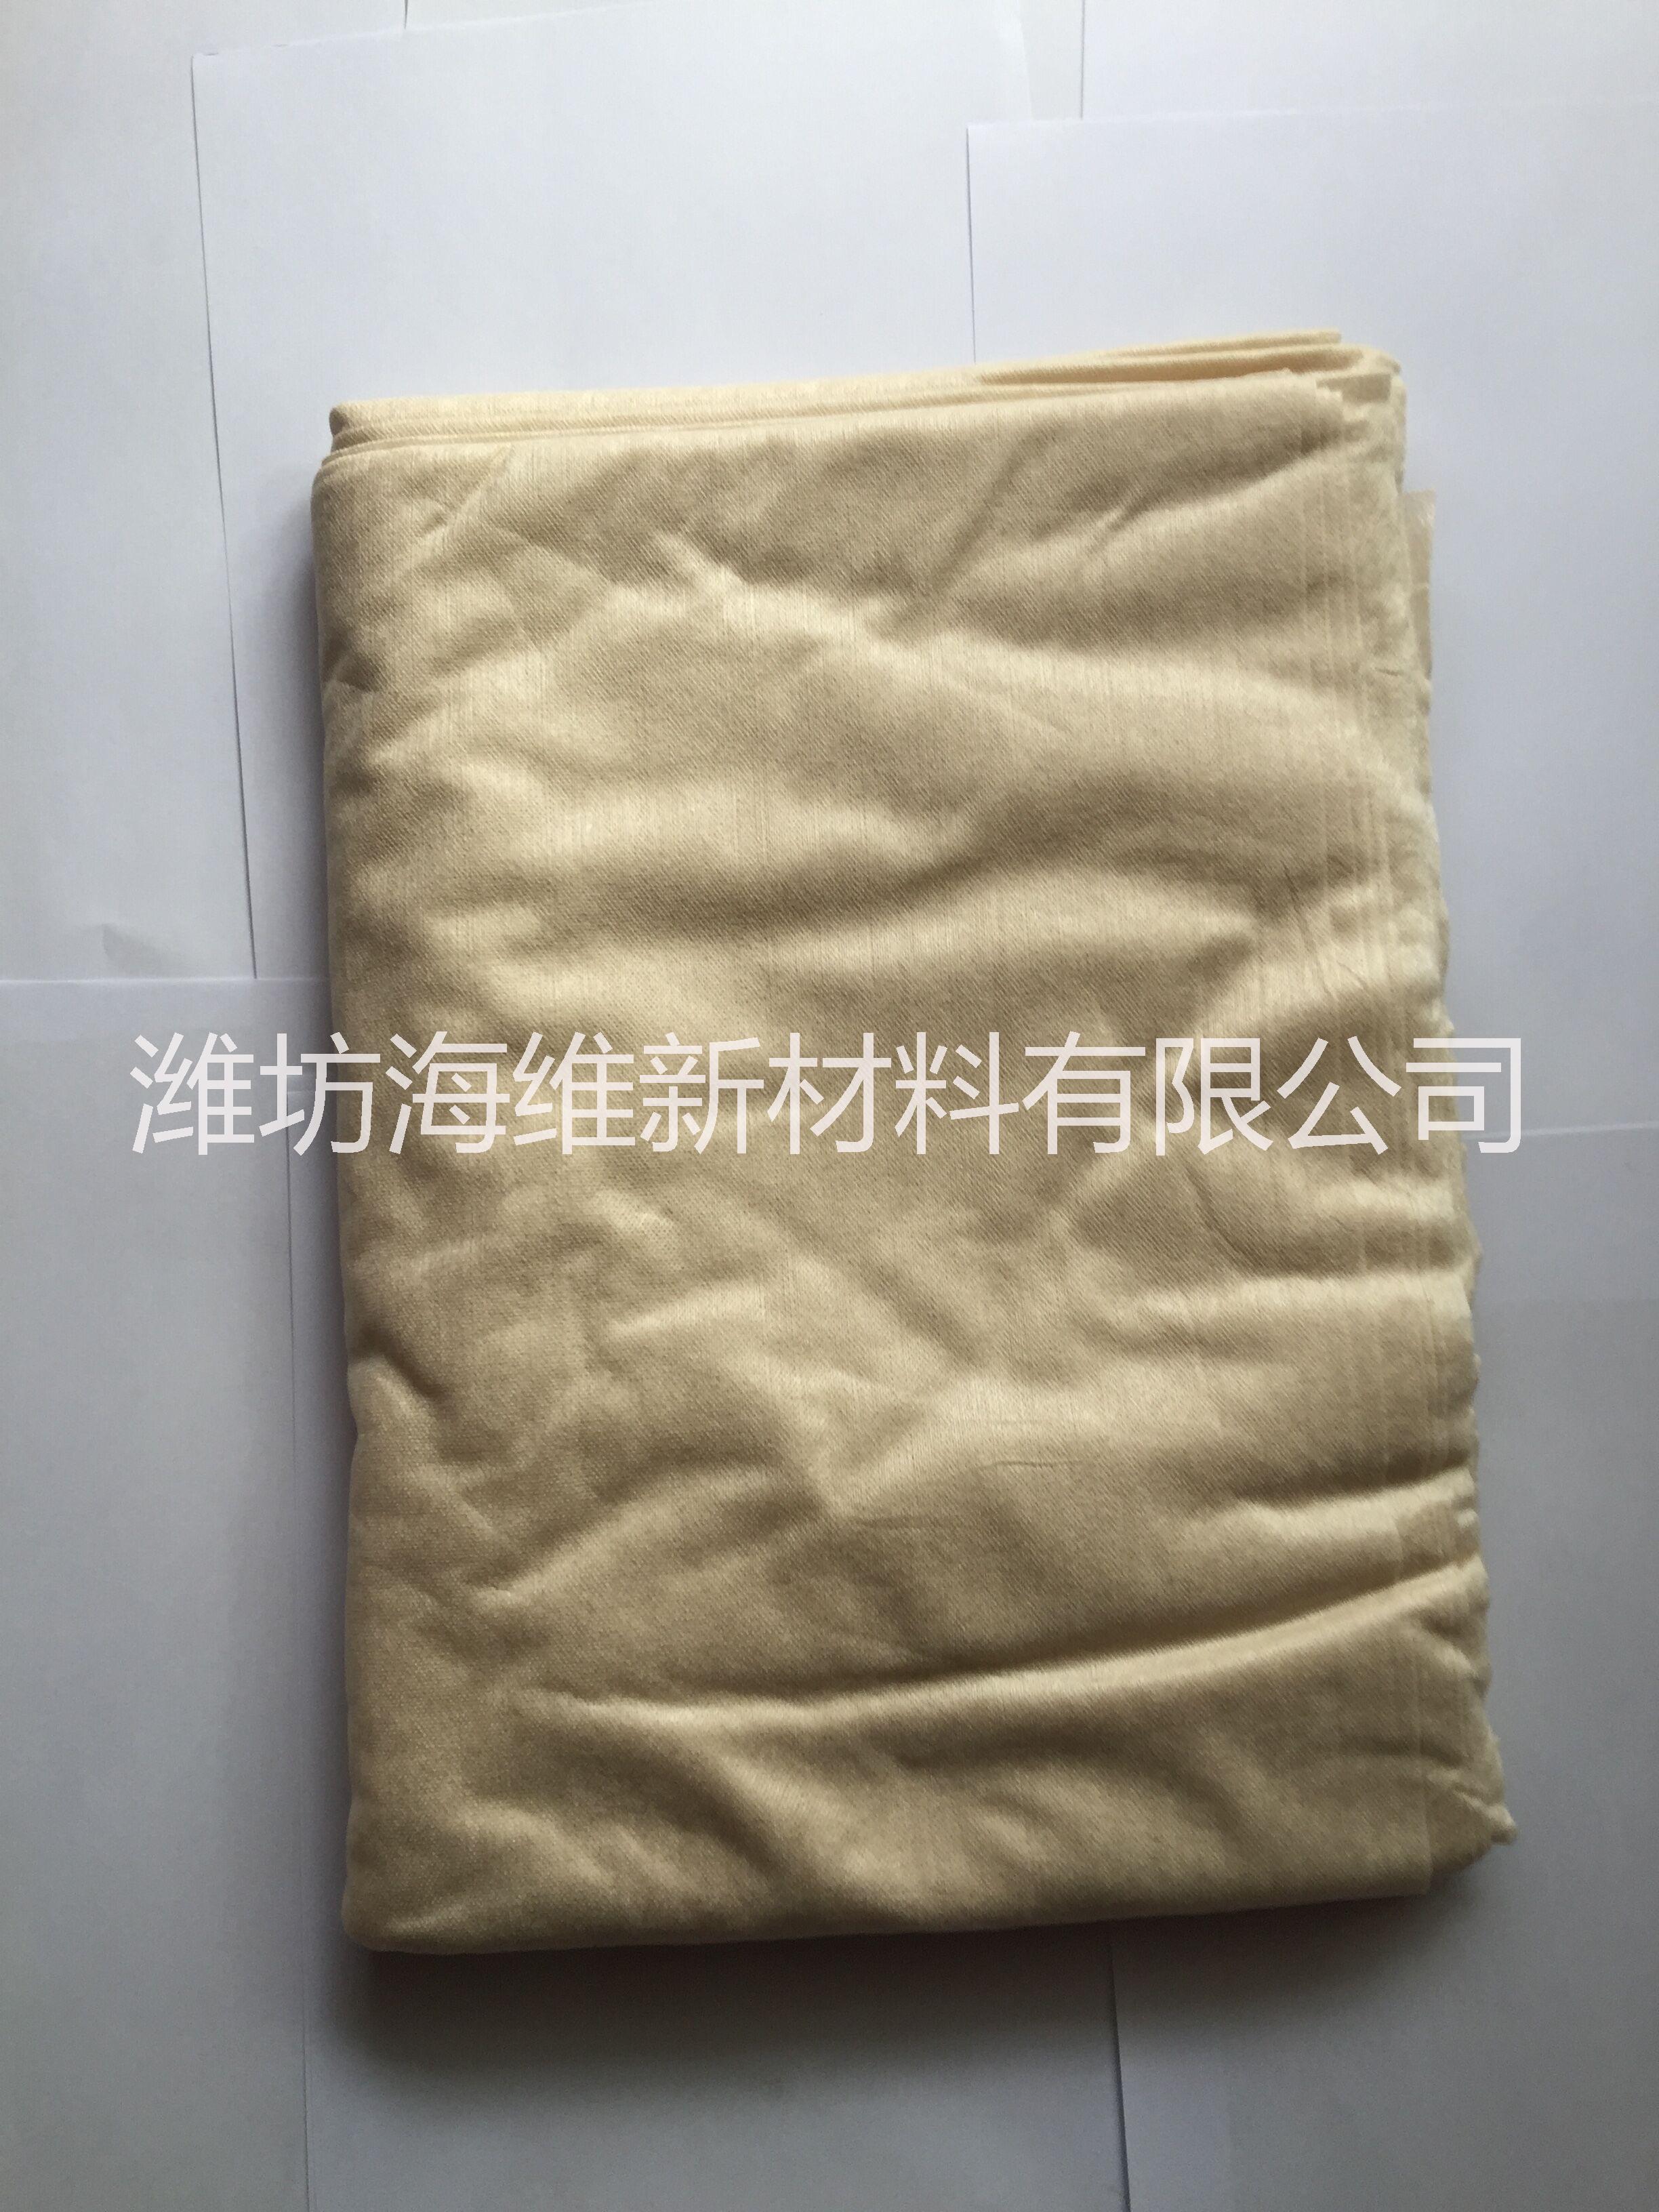 潍坊市PLA纤维水刺布/玉米纤维水刺布厂家供应用于茶叶袋|医疗用品|绝缘材料的PLA纤维水刺布/玉米纤维水刺布